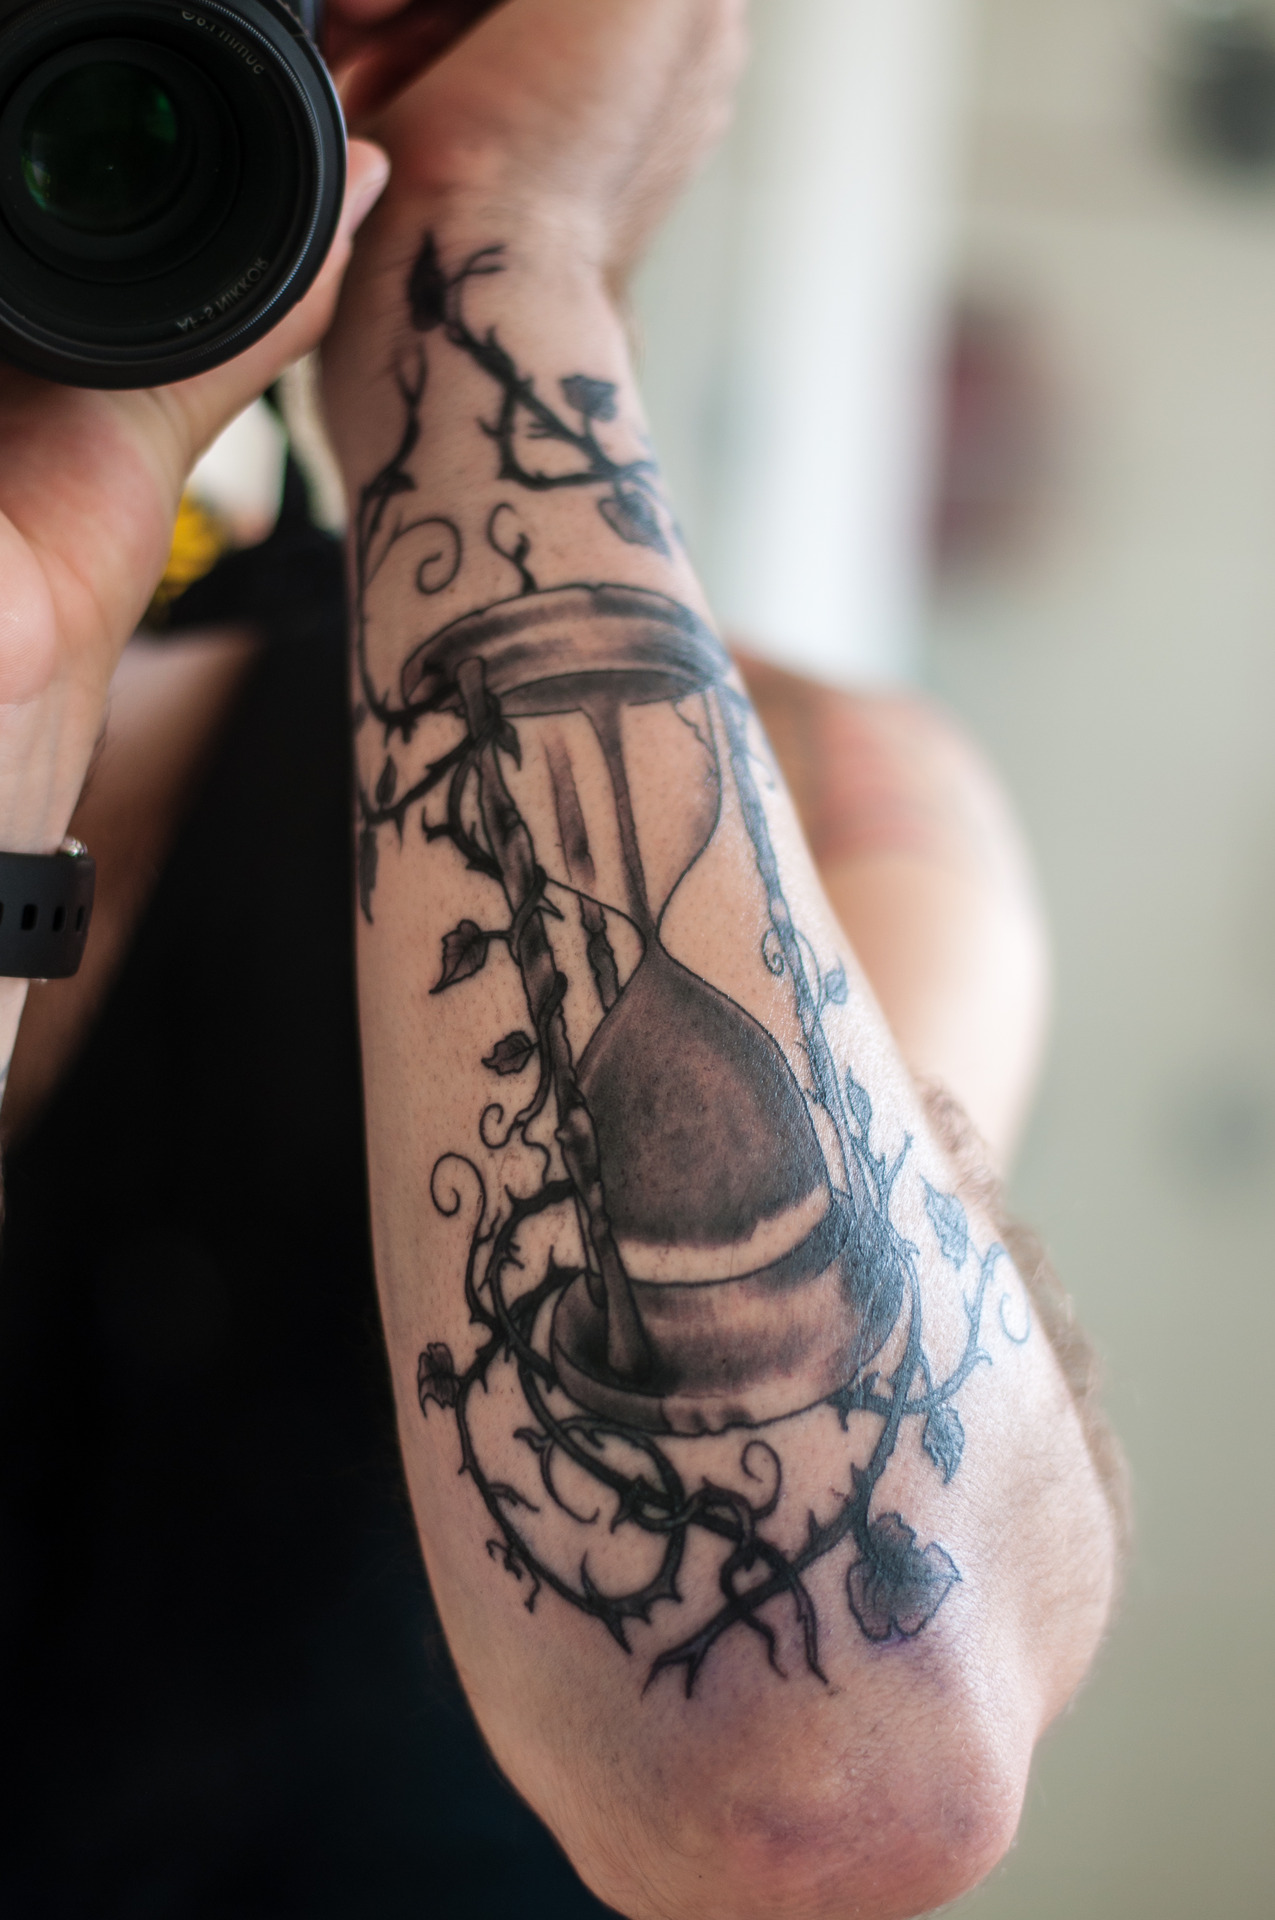 Cool sandclock arm tattoo